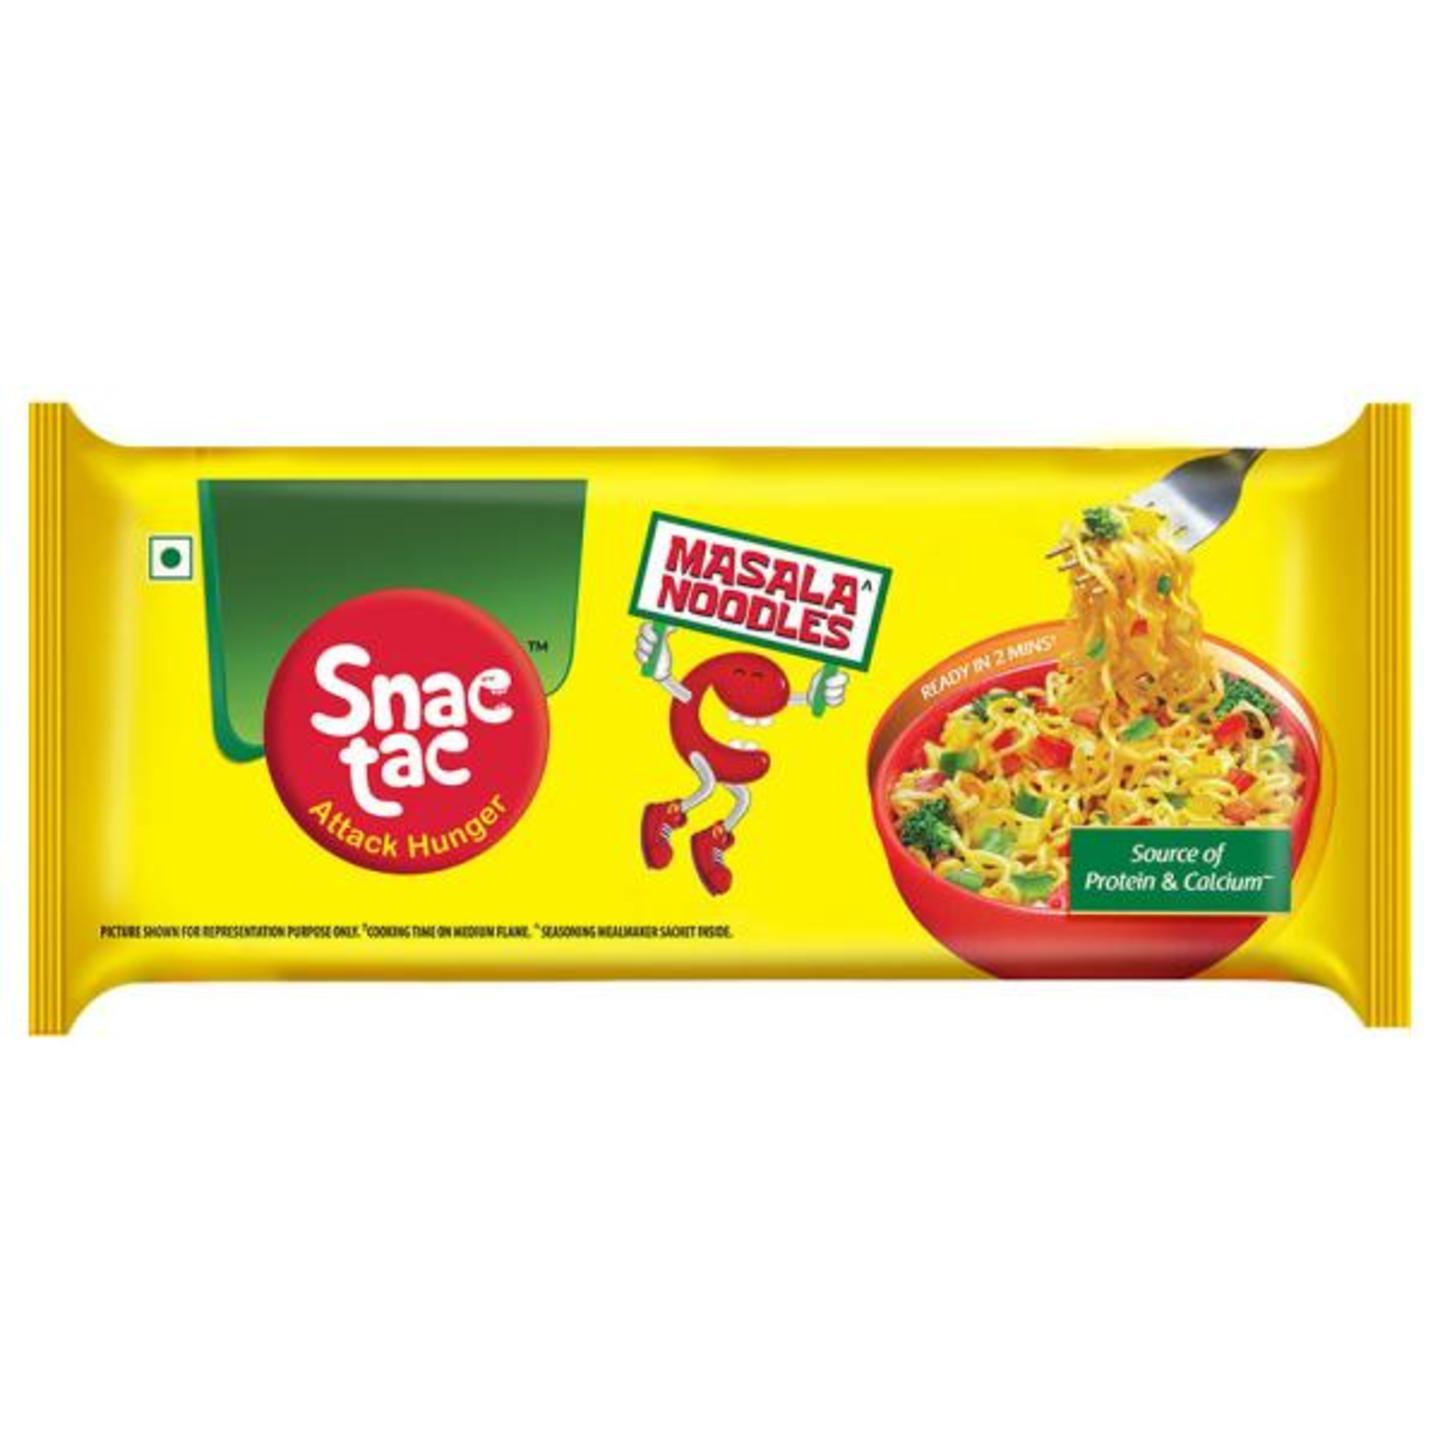 Snac tac Masala Instant Noodles 292 g